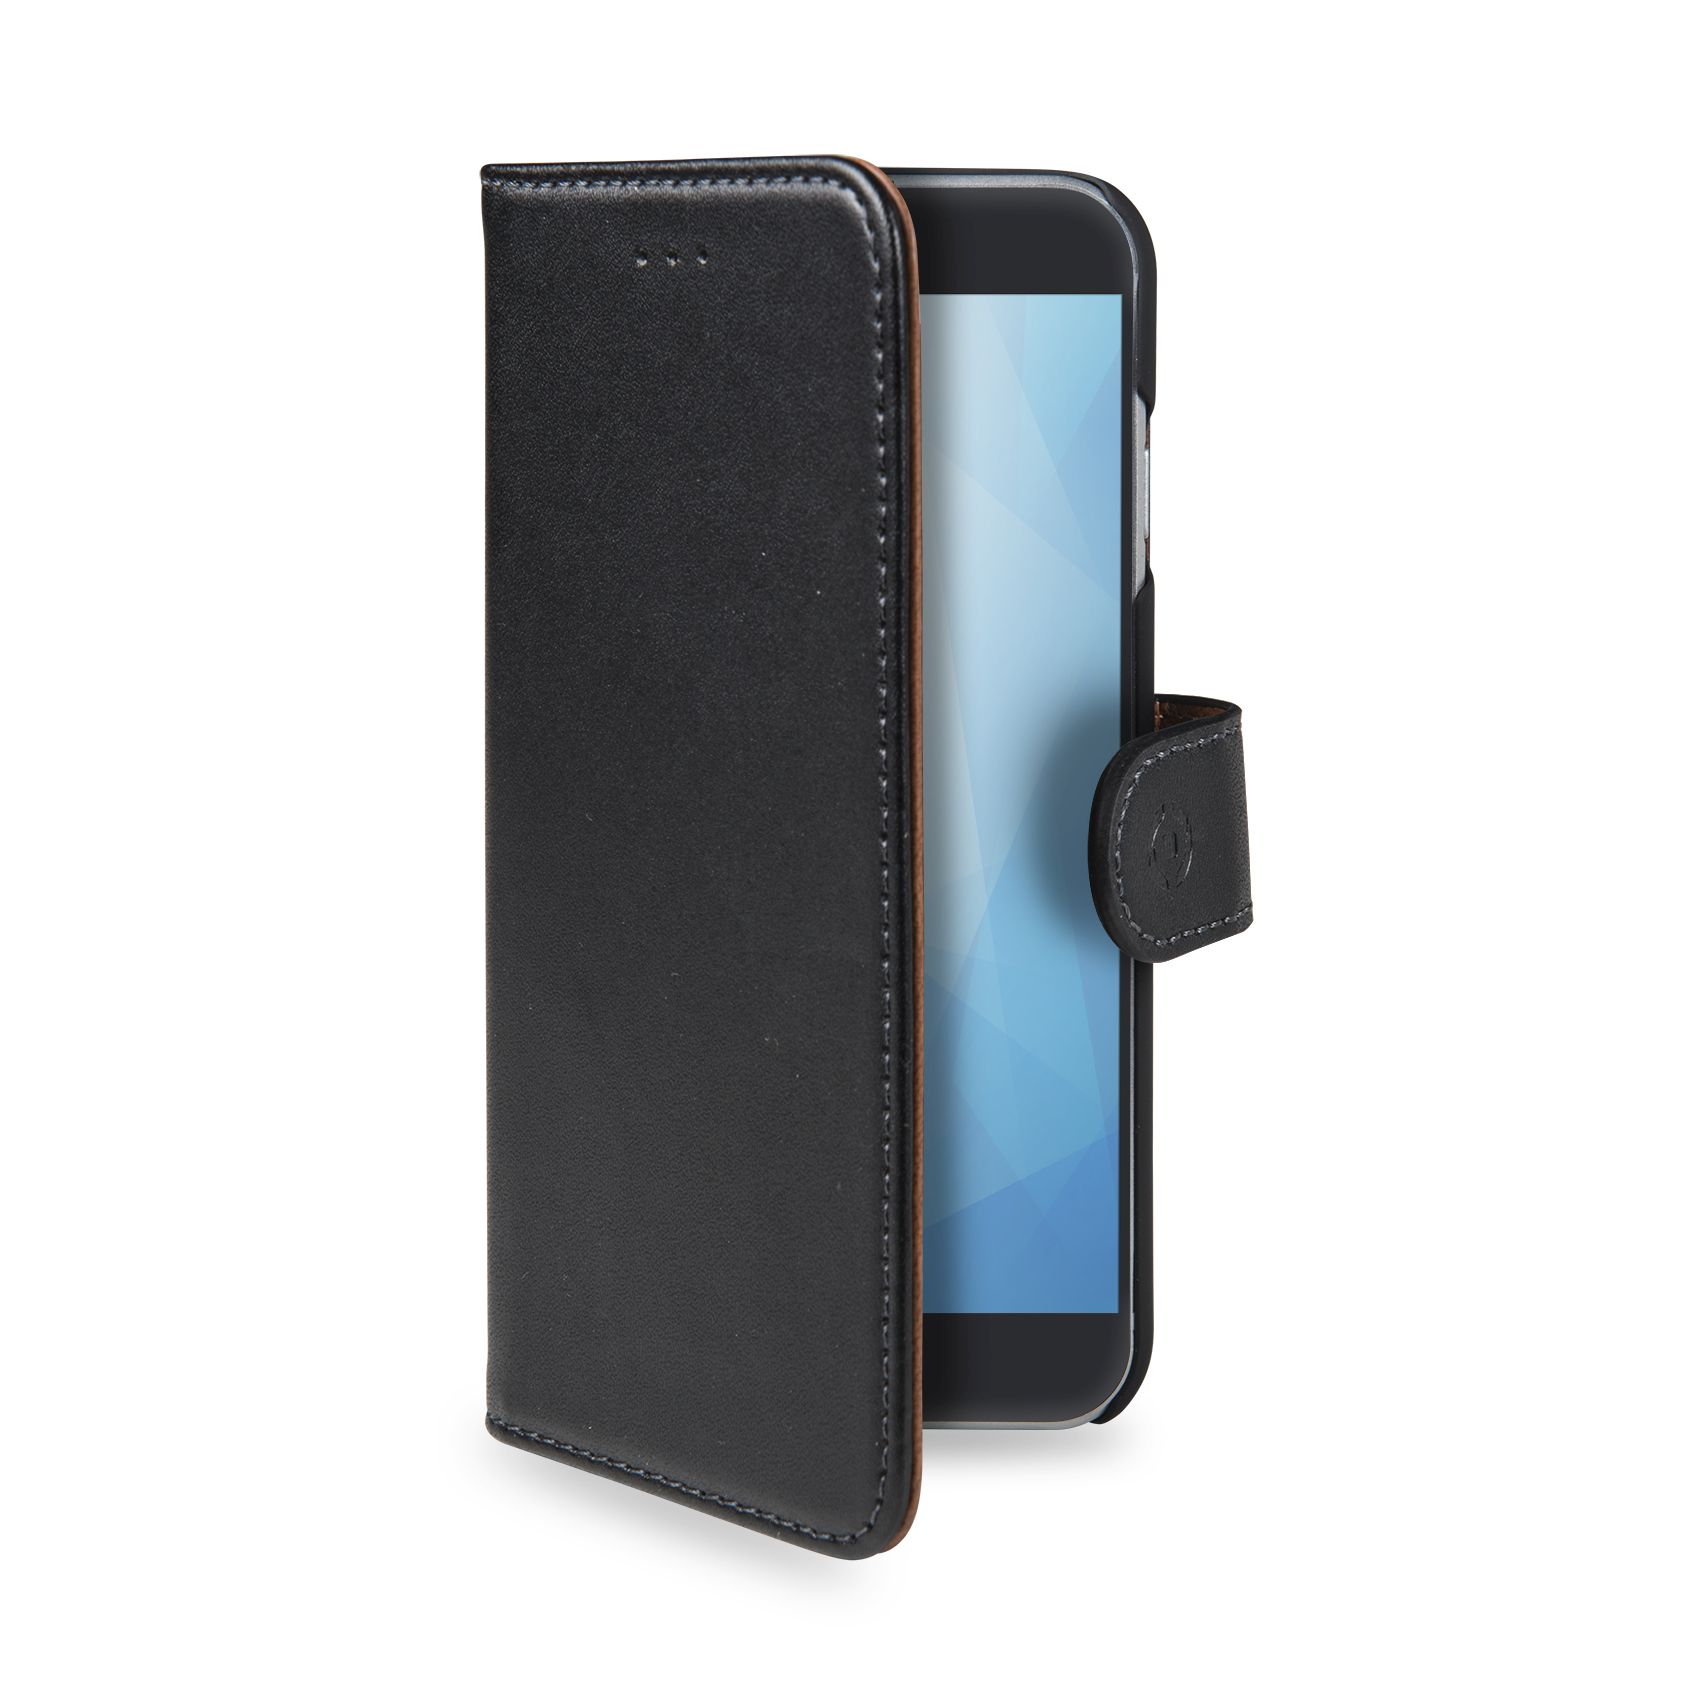 Pouzdro CELLY Wally pro Nokia 5.1/Nokia 5 (2018), PU kůže, black